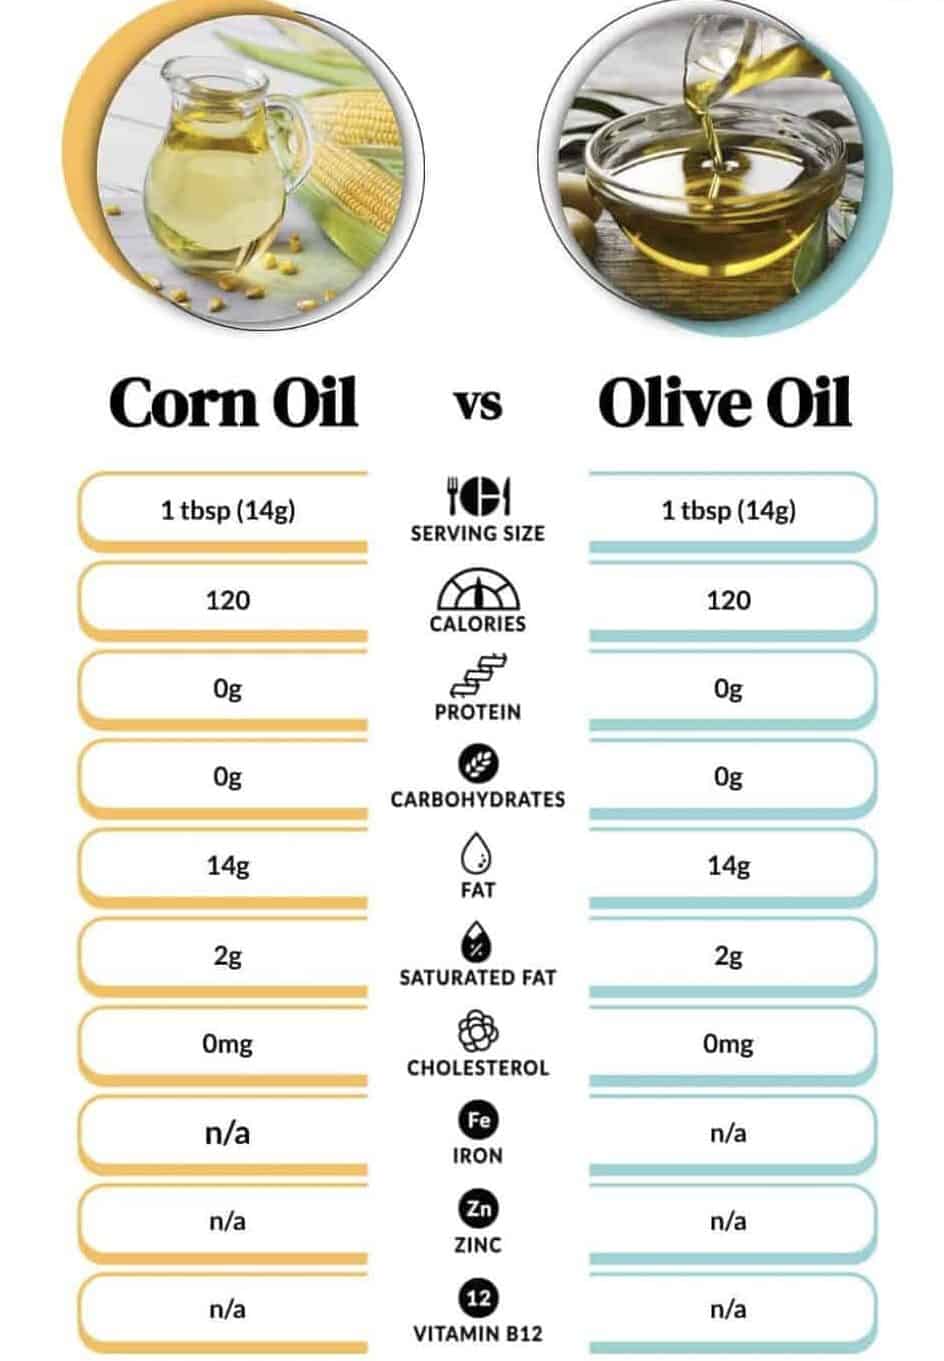 Corn Oil vs. Olive Oil